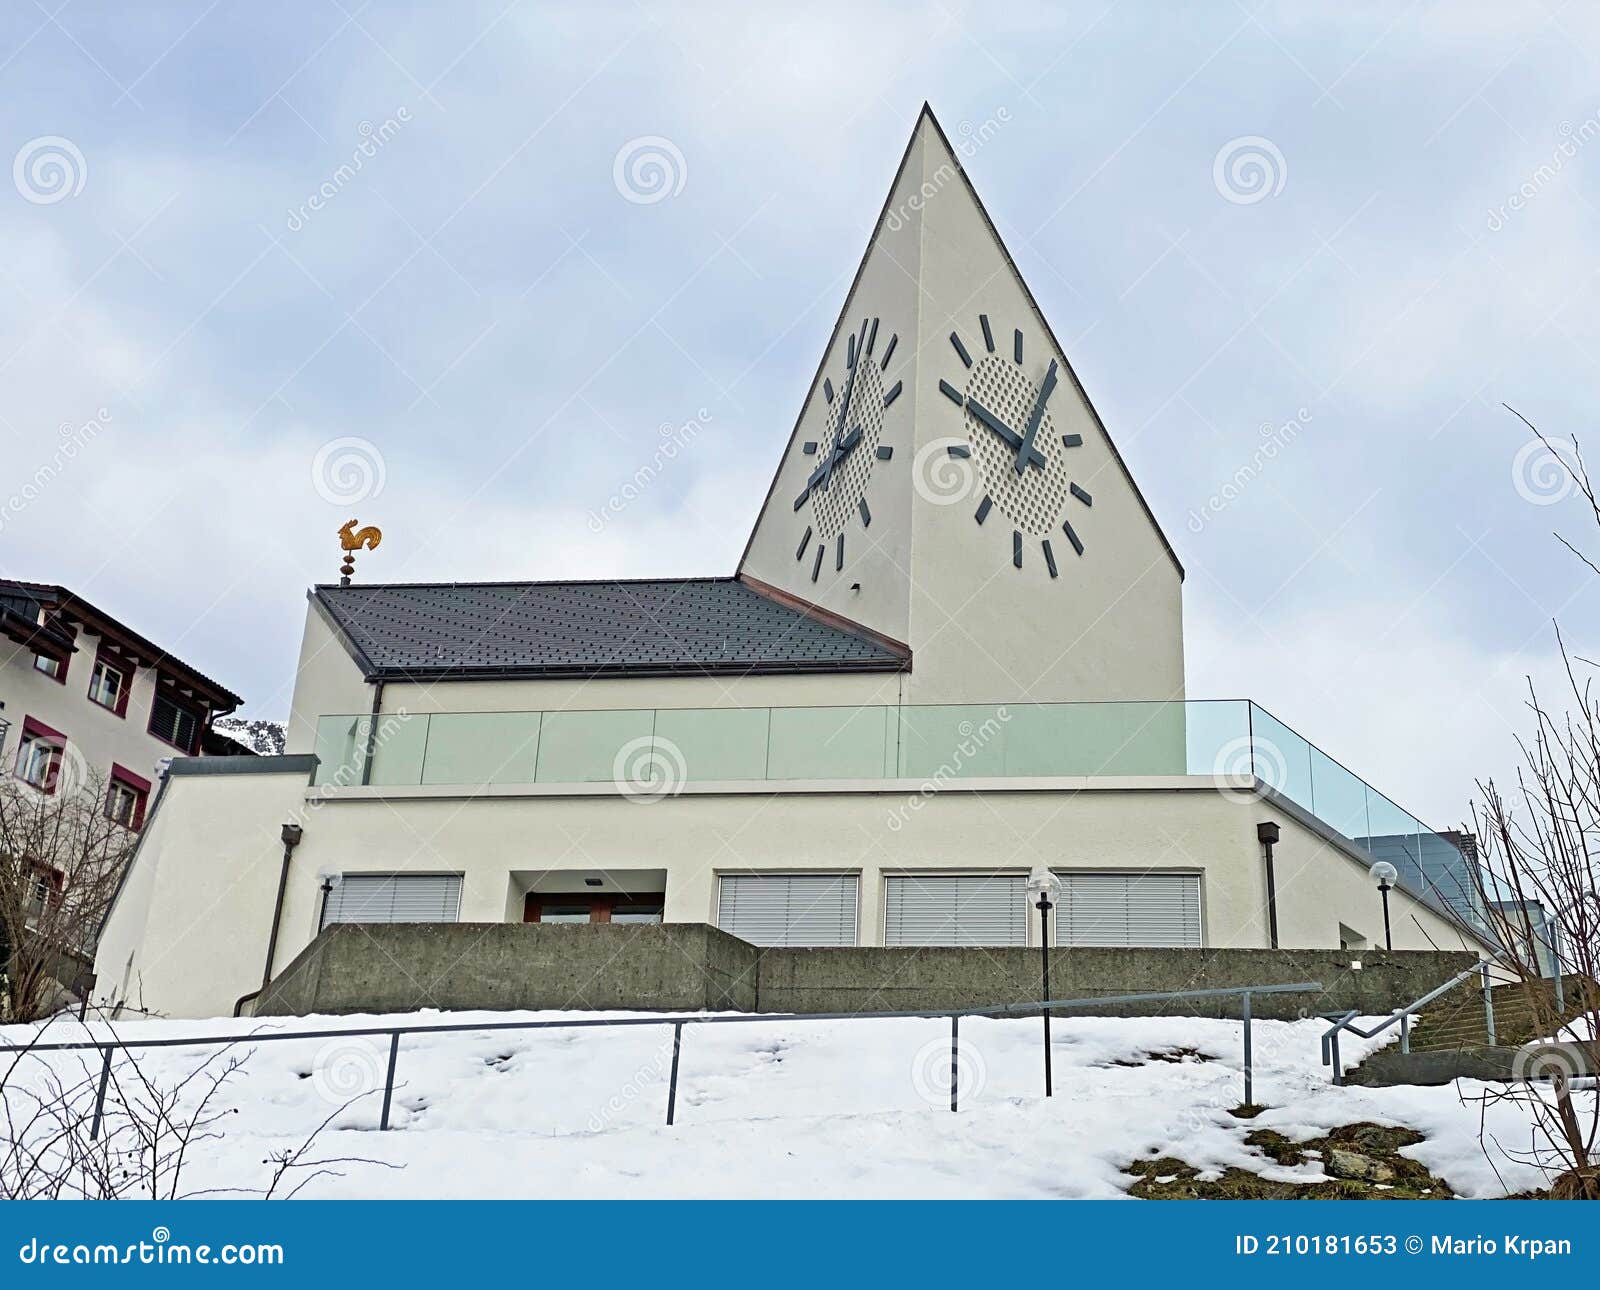 the evangelical-reformed mountain church amden or die evangelisch-reformierte bergkirche amden - canton of st. gallen, switzerland